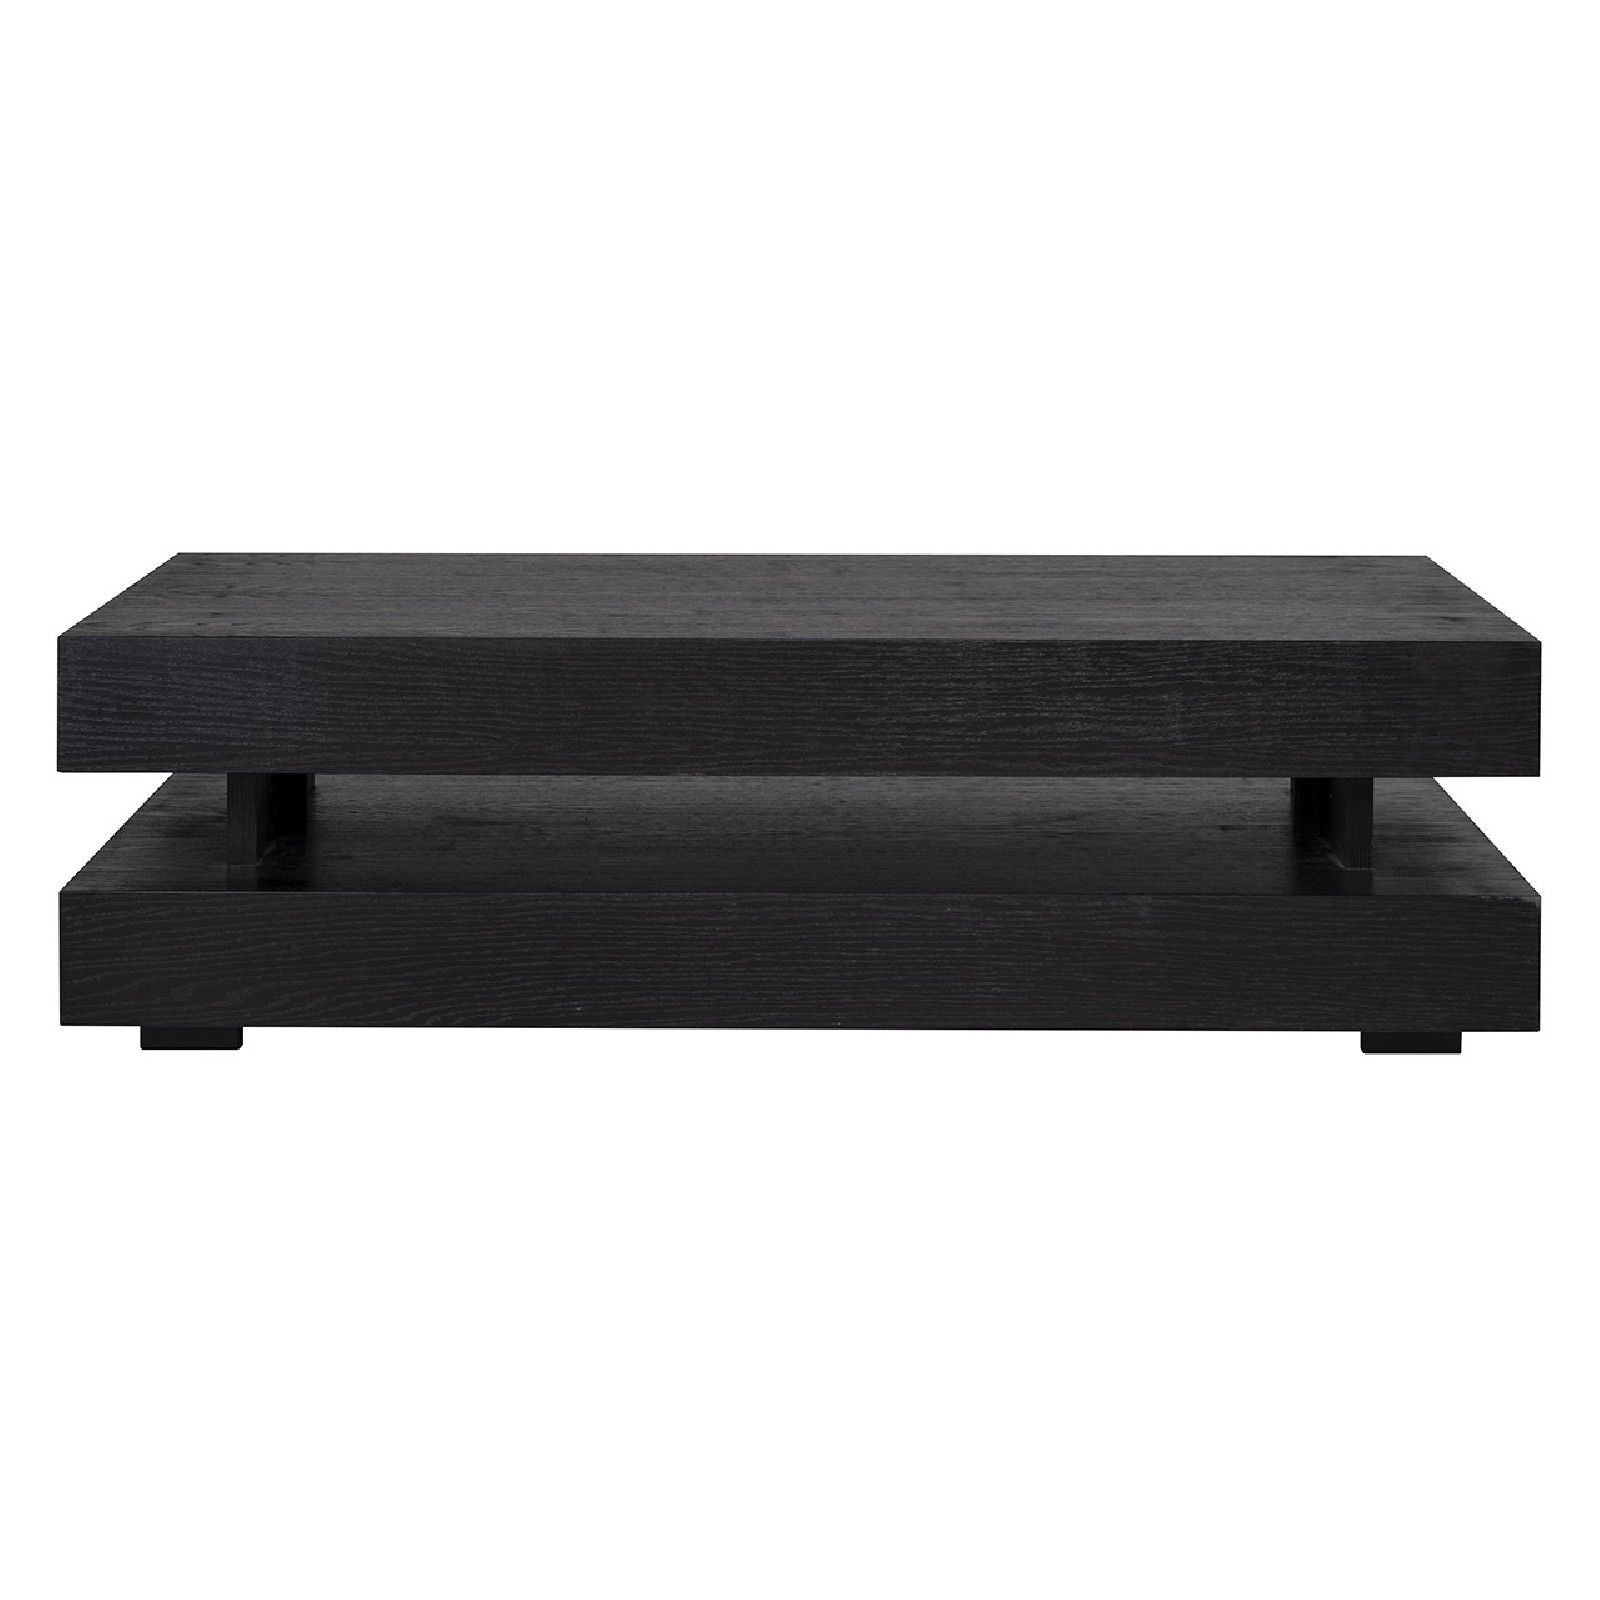 Table basse rectangulaire noir Blok H 